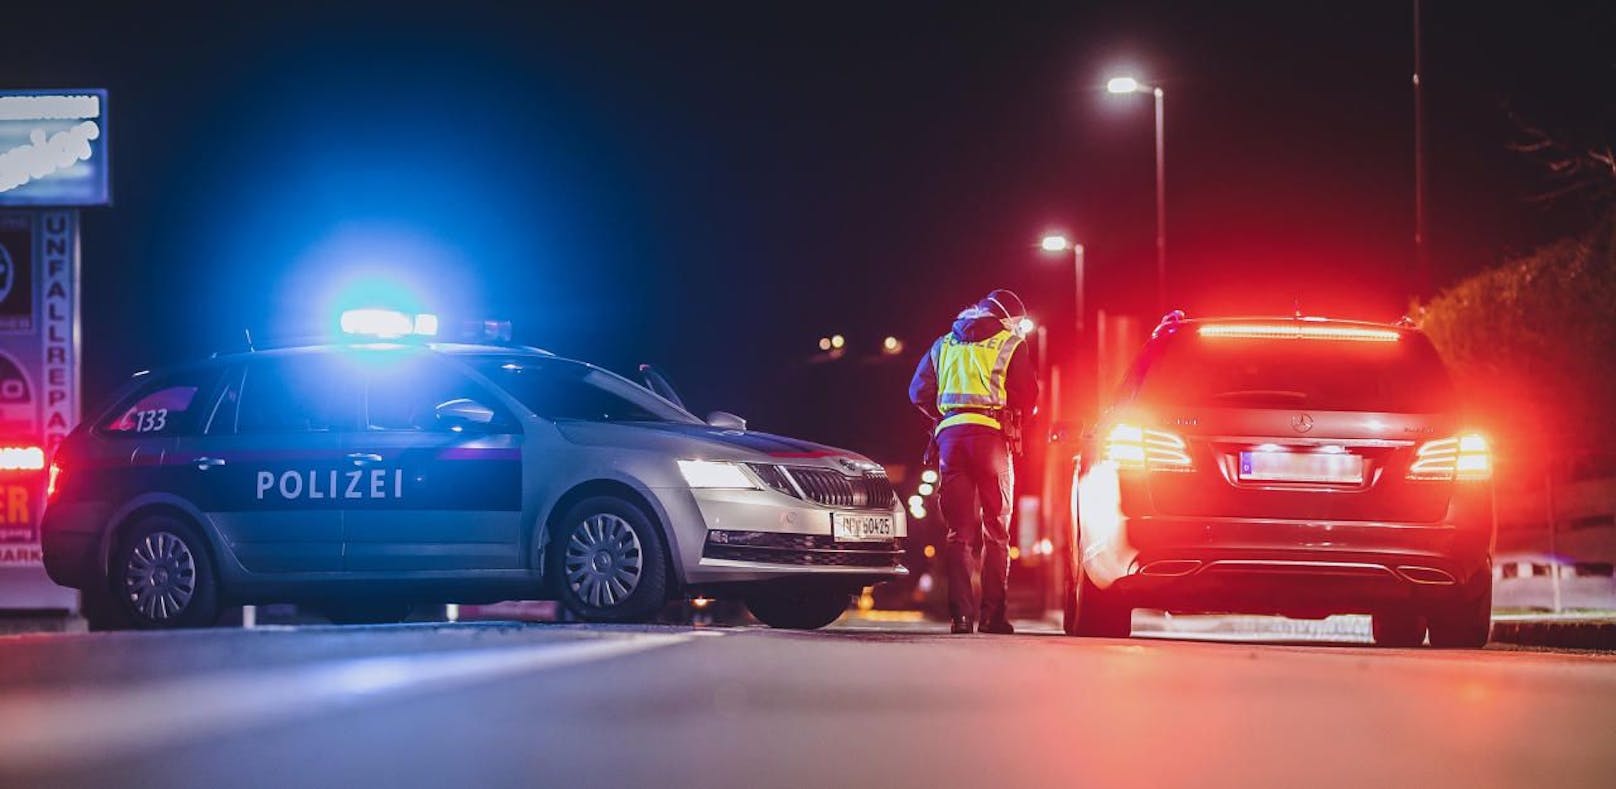 Führerschein-Neuling (18) raste vor Polizei davon